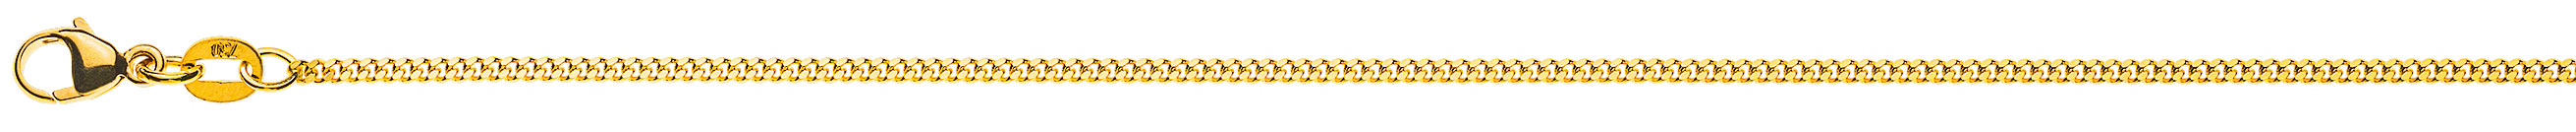 AURONOS Prestige Collier en or jaune 18 carats panzer poncé 38cm 1.6mm